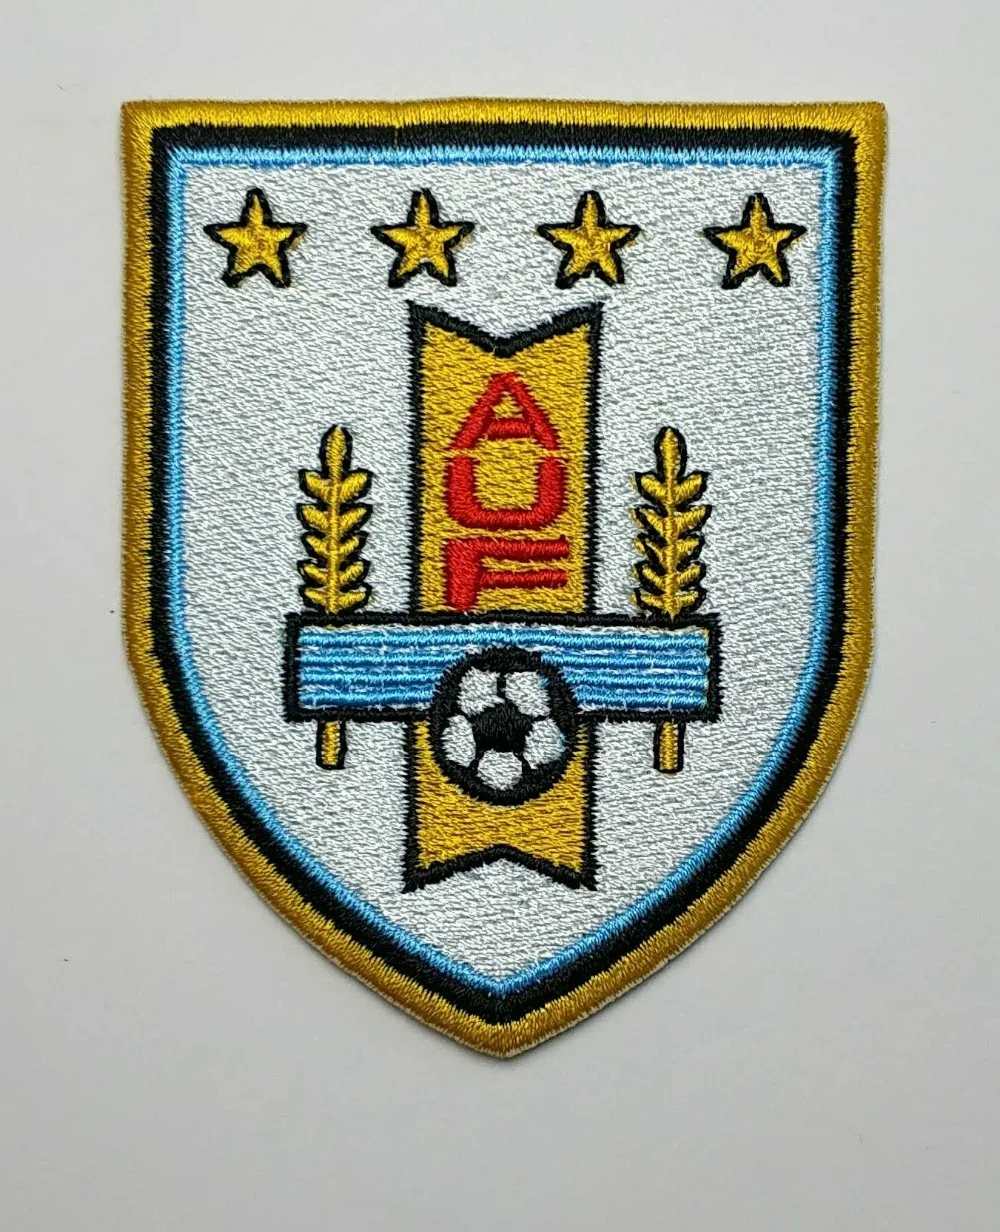 Aufnäher Patch Fußball soccer Football nationale mannschaft Ukraine soccer badeg 